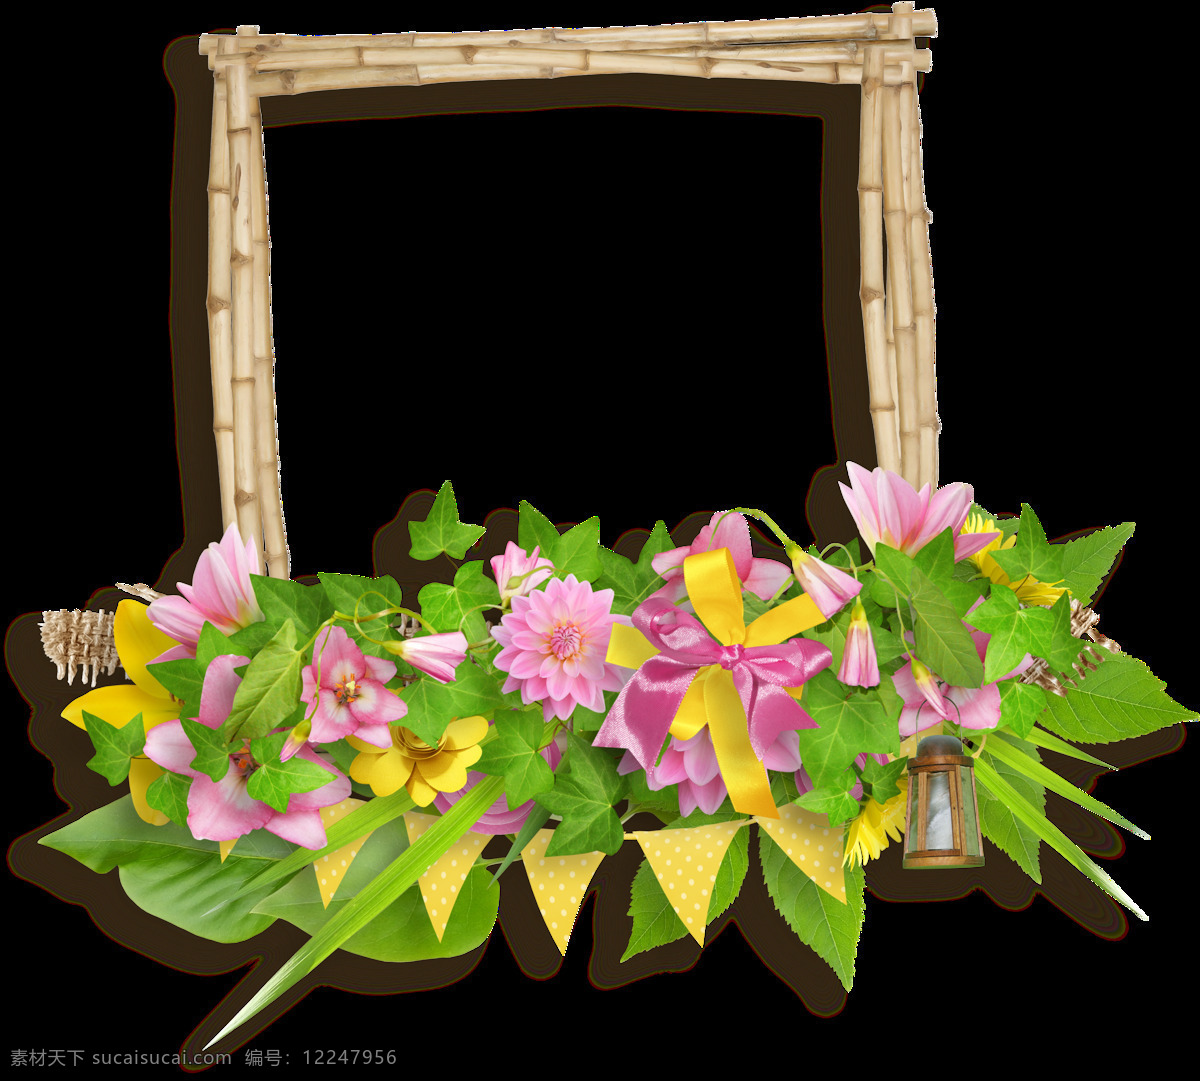 彩绘 红 黄花 装饰 相框 透明 木枝 绿叶 丝带 鲜花 透明素材 免扣素材 装饰图片